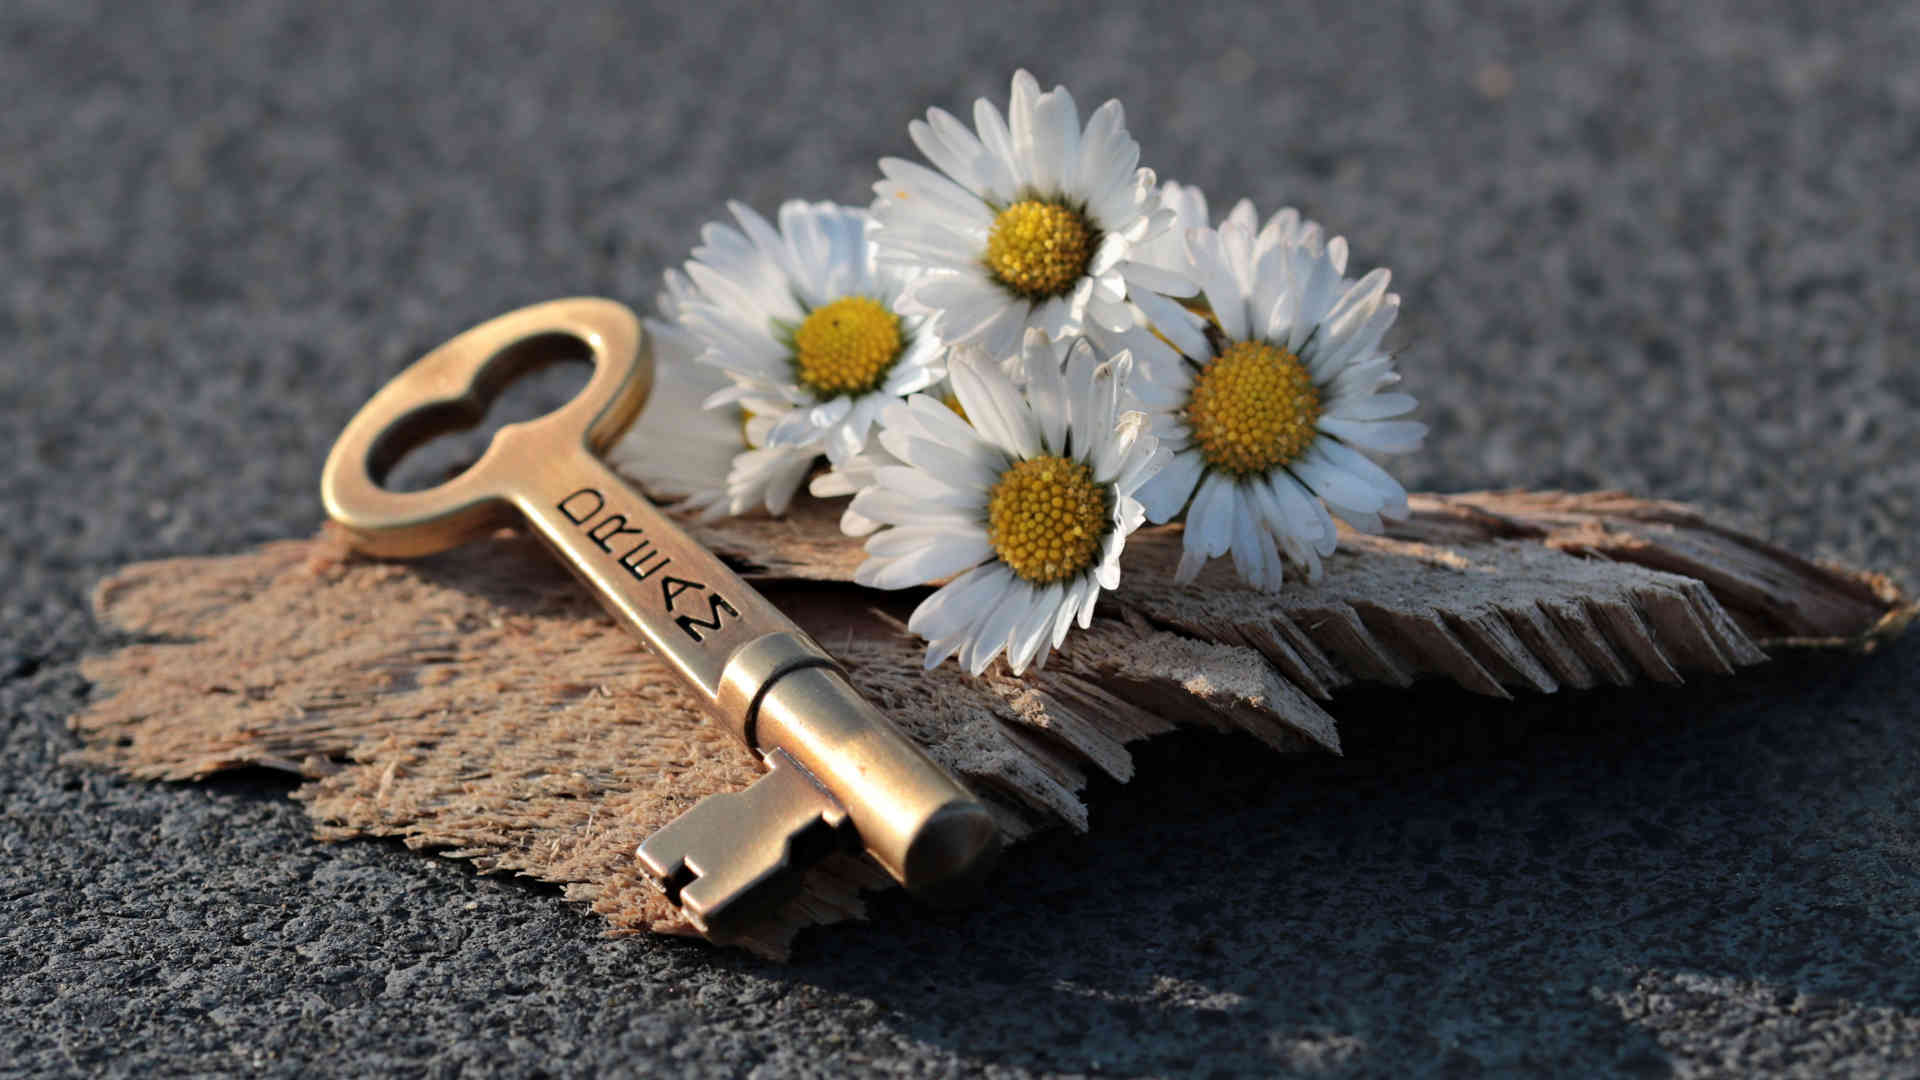 Ein Schlüssel mit der Gravur „Traum“ liegt auf einem Stück Holz an der Seite von Blumen. Du musst den Schlüssel nur ergreifen, um die Tür zur Erfüllung Deiner Träume damit aufzuschließen.